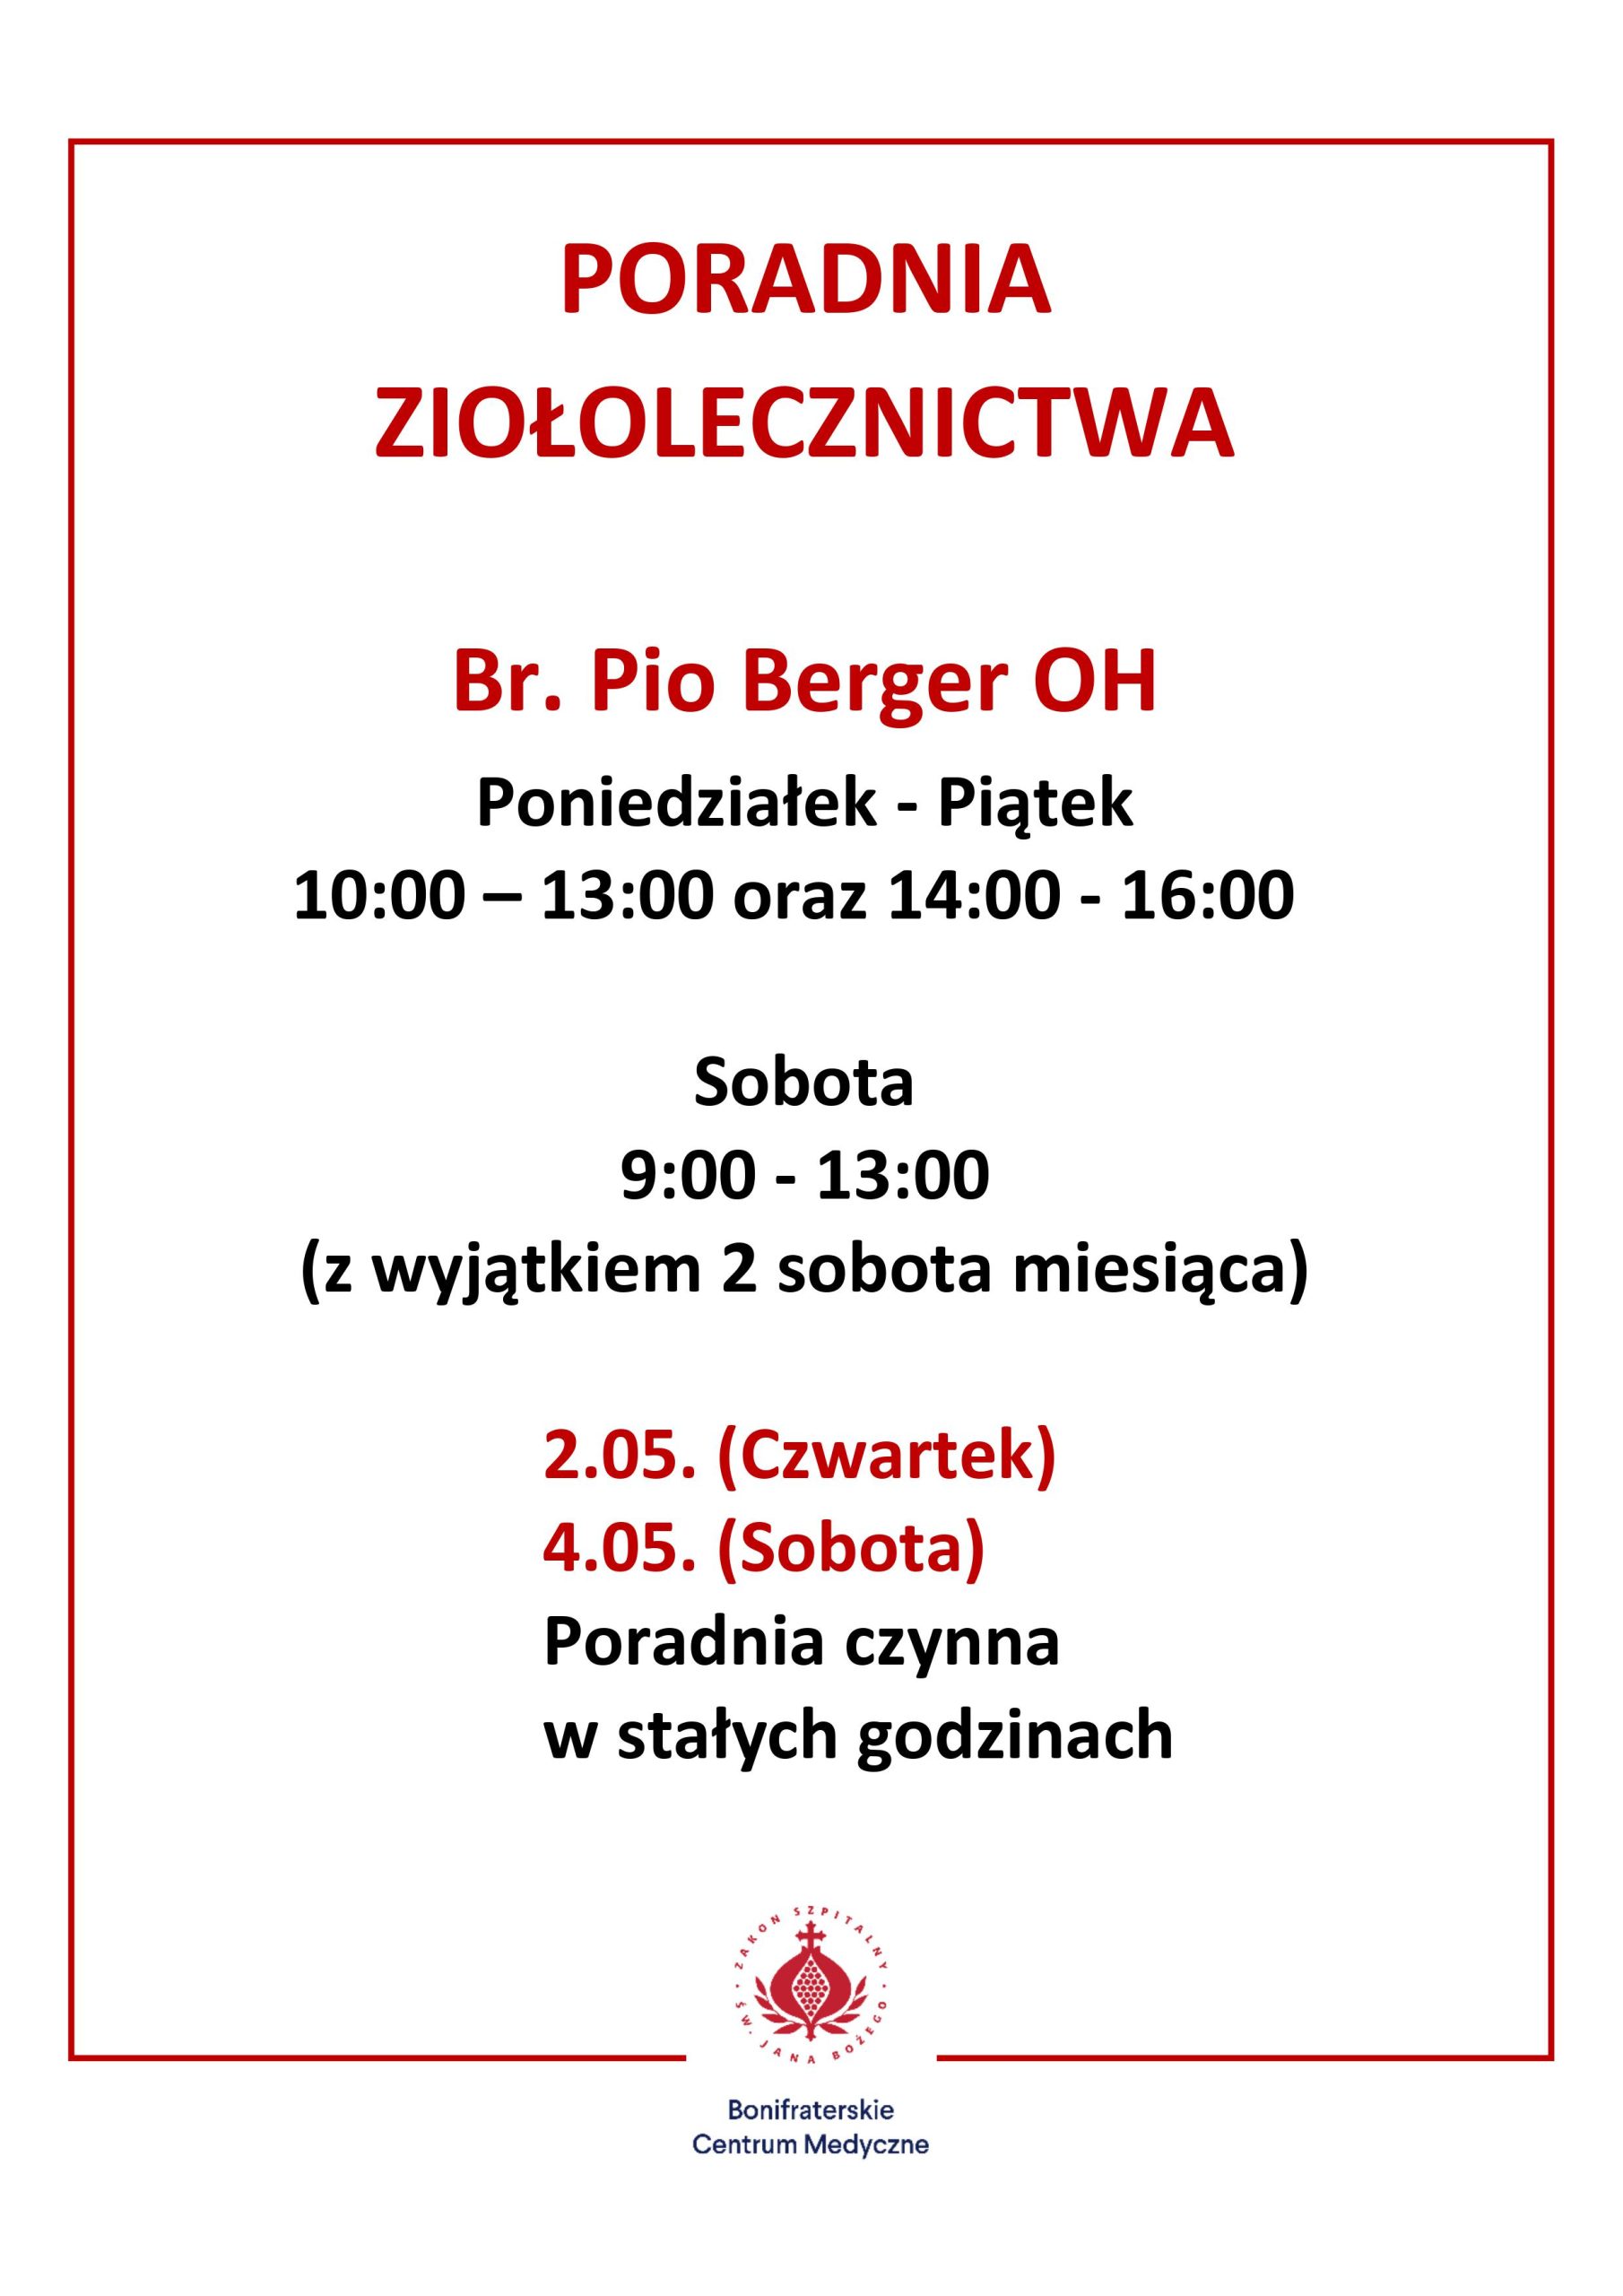 Grafika obrazuje informację dotyczącą dni oraz godzin przyjęć w bonifraterskiej Poradni Ziołolecznictwa w Krakowie